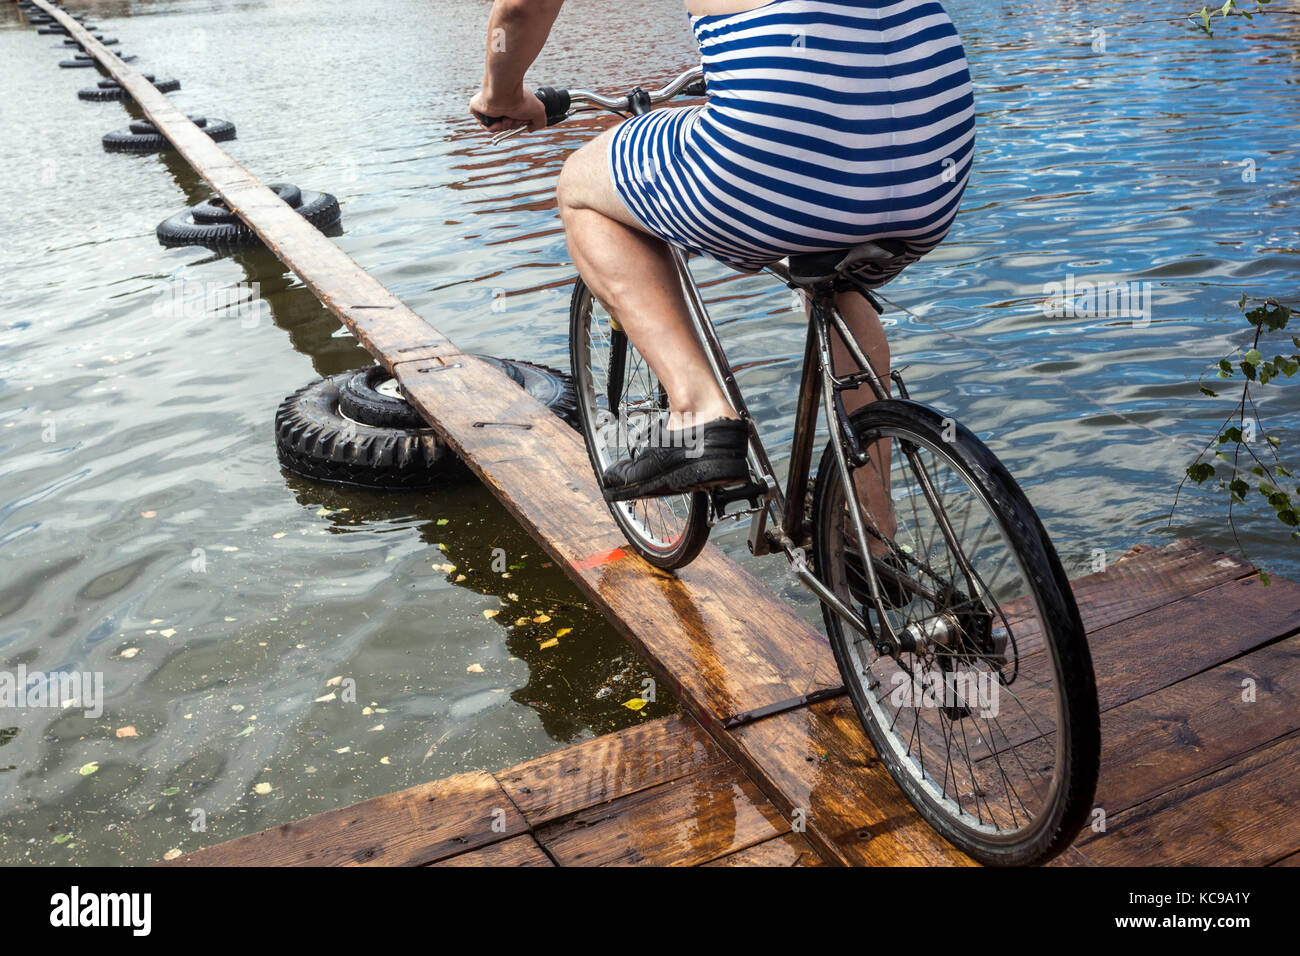 Festival ceco, Un ciclista su una passerella di legno cerca di attraversare lo stagno, una moto sportiva insolita attraverso l'acqua, una tuta da bici a strisce Foto Stock